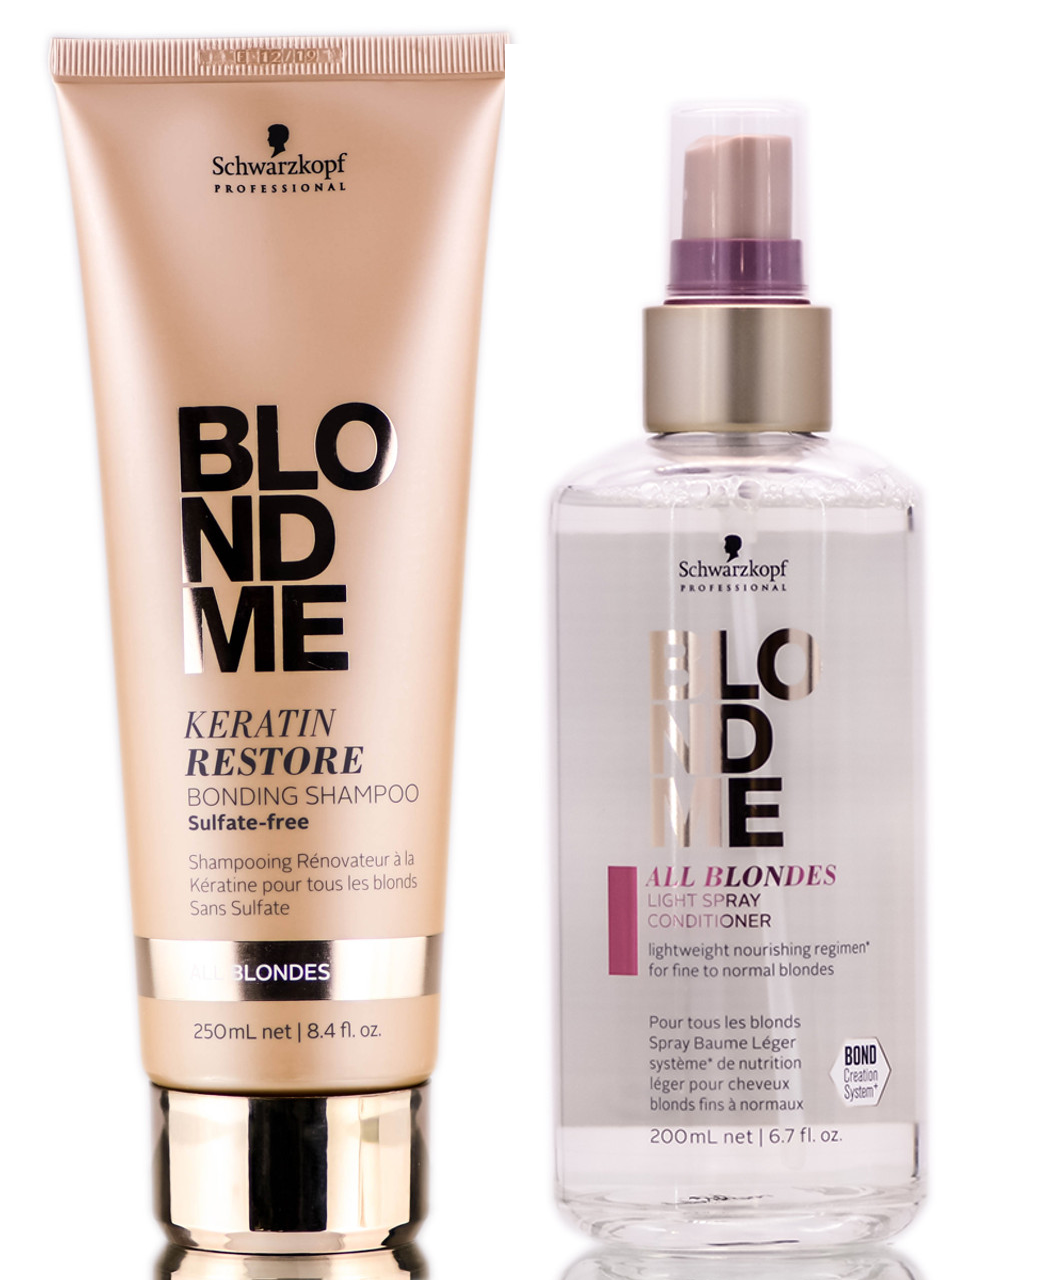 BlondMe Bonding Shampoo & Light Spray Conditioner SleekShop.com